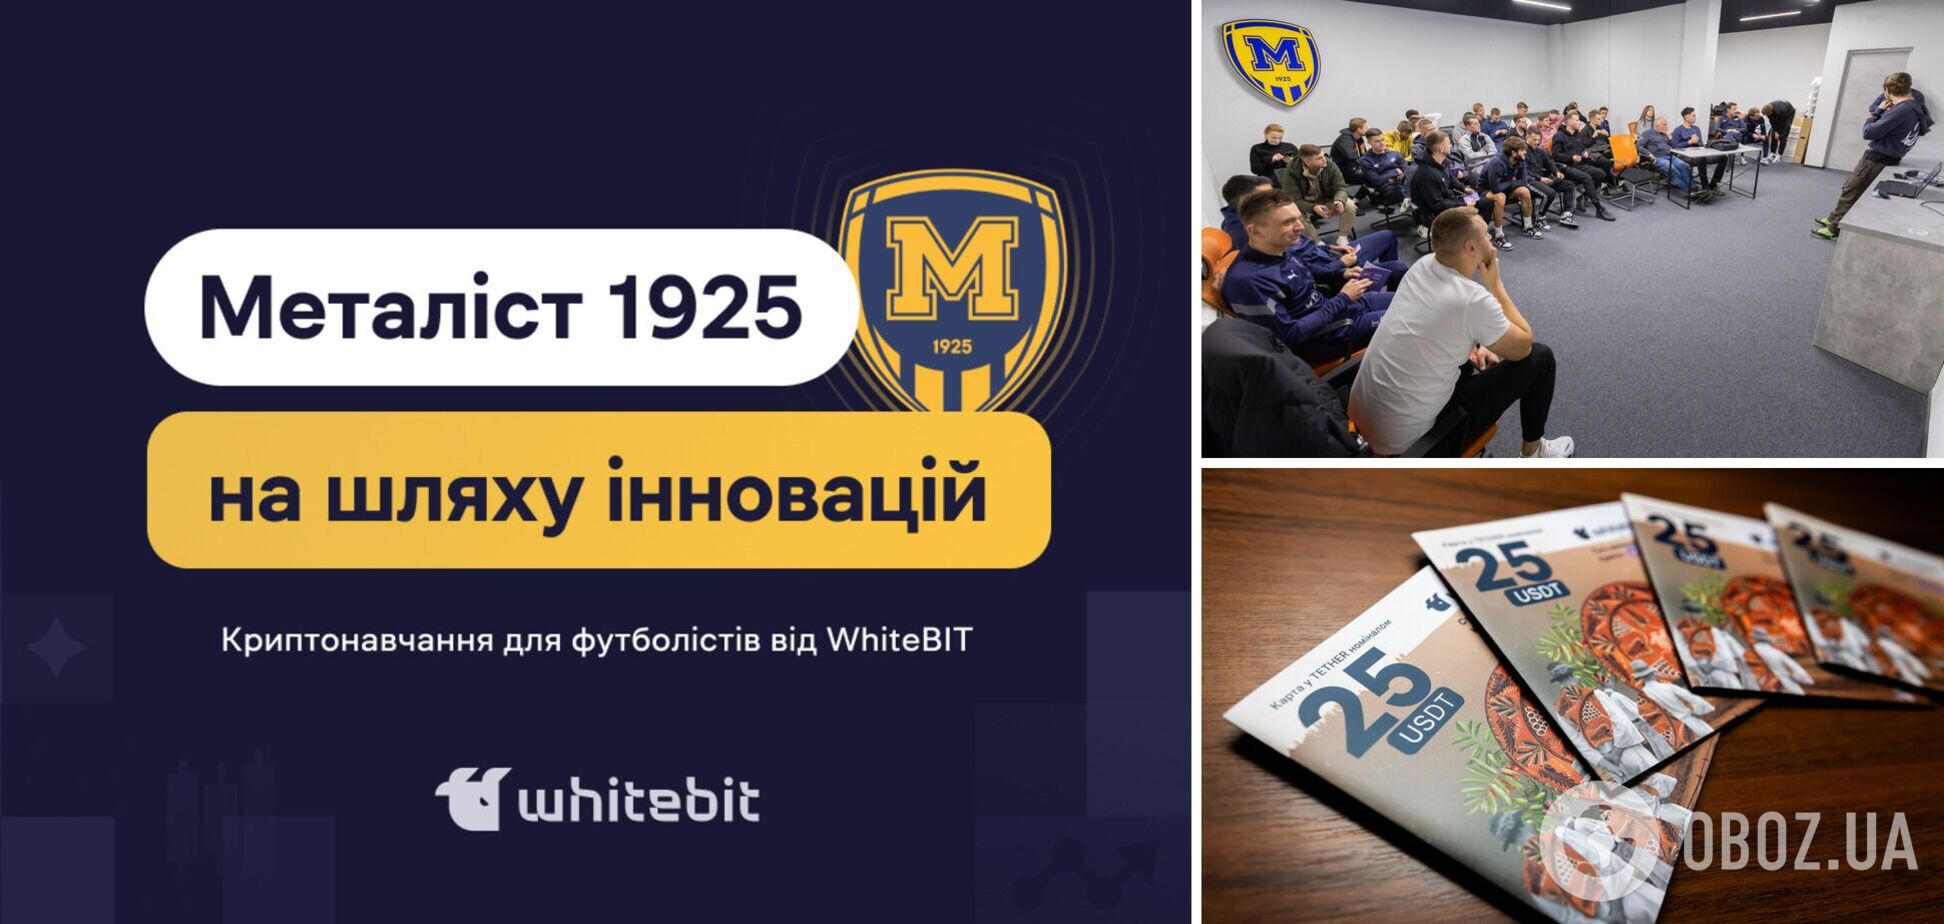 Футбол встречает блокчейн: уникальное криптообучение для харьковского 'Металлиста 1925' от WhiteBIT